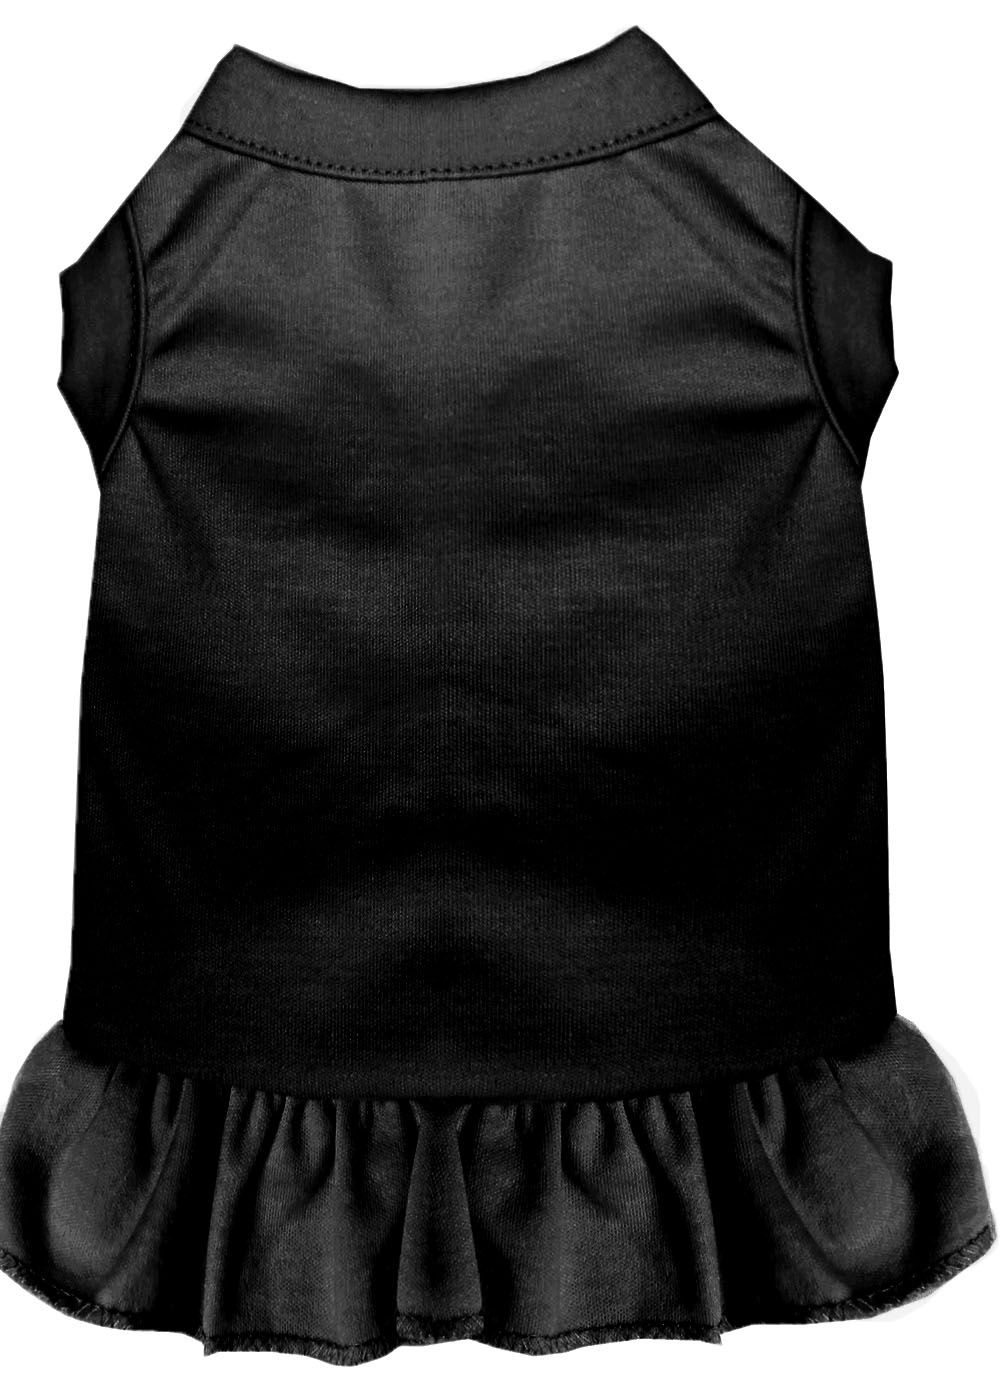 Plain Pet Dress Black XS